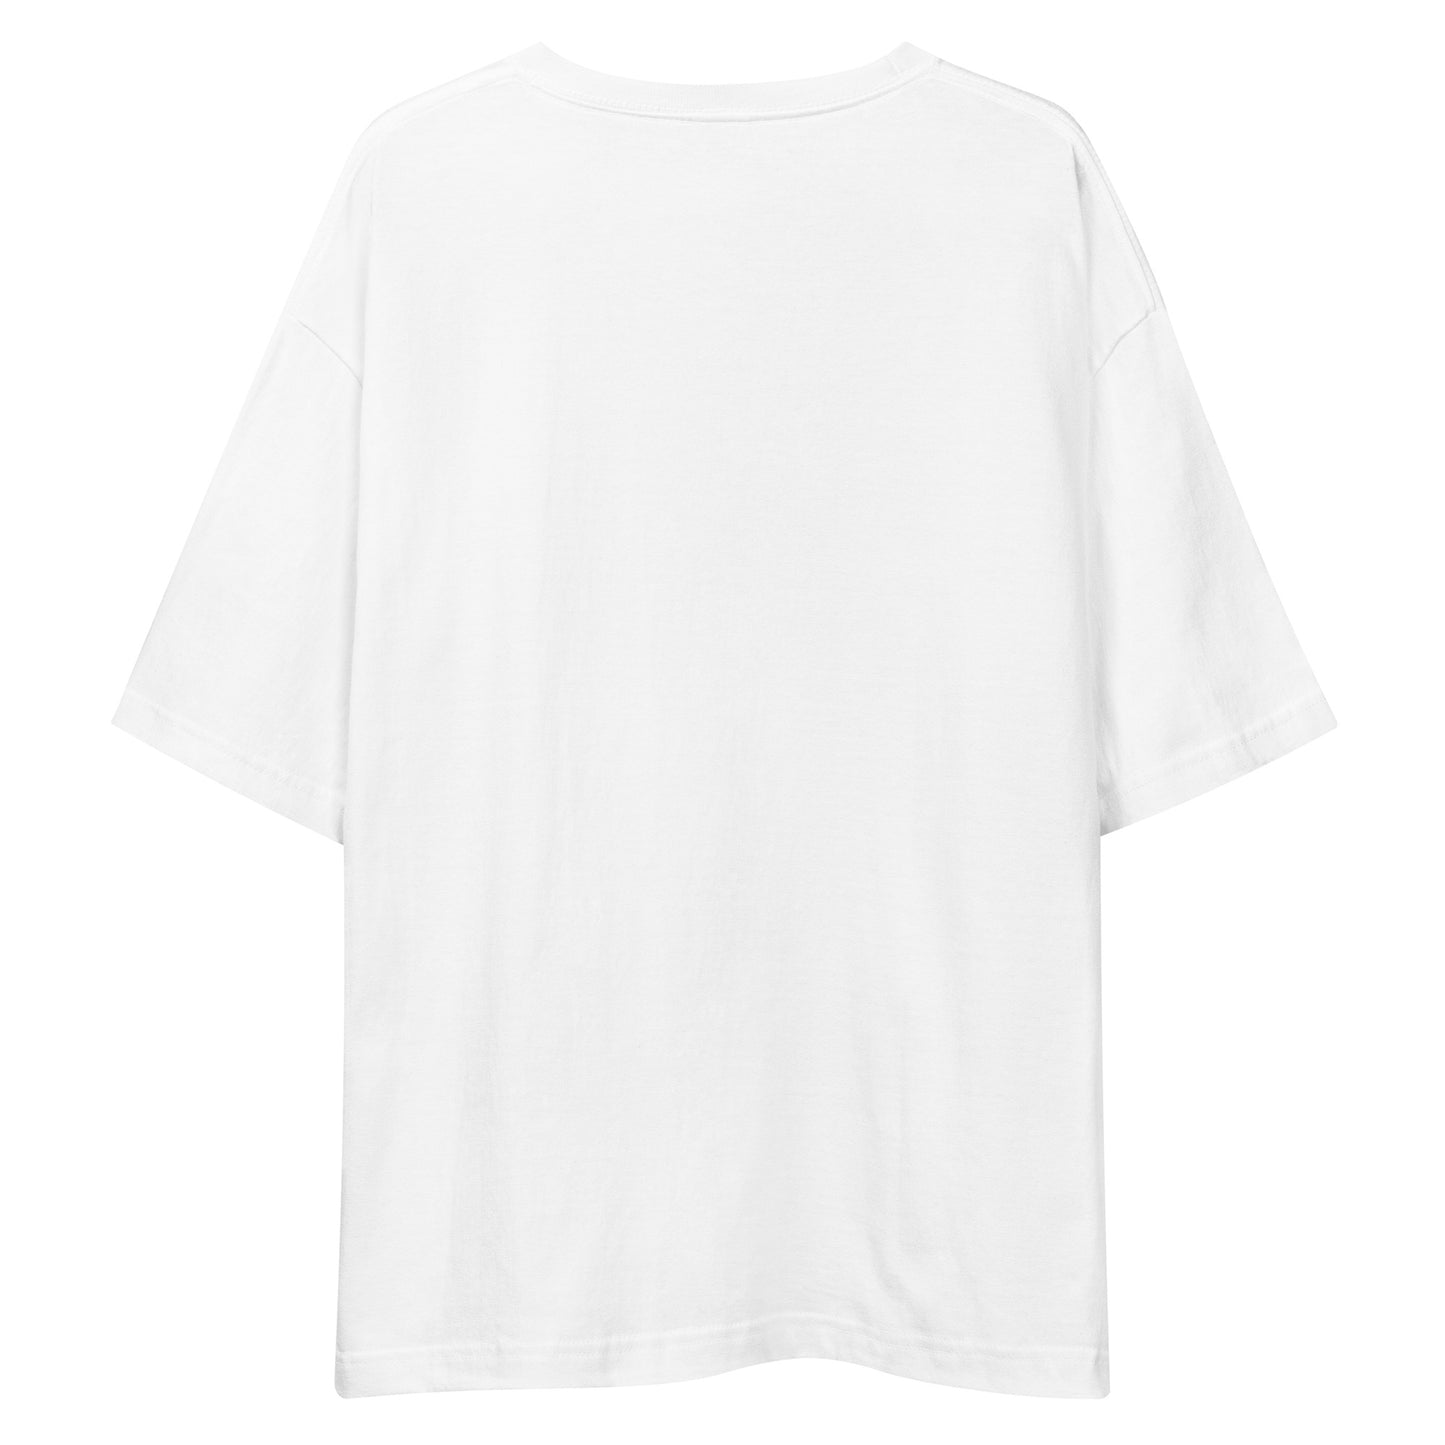 E236 - Kaos/Siluet besar (Kemenangan MX : Putih/Hitam)